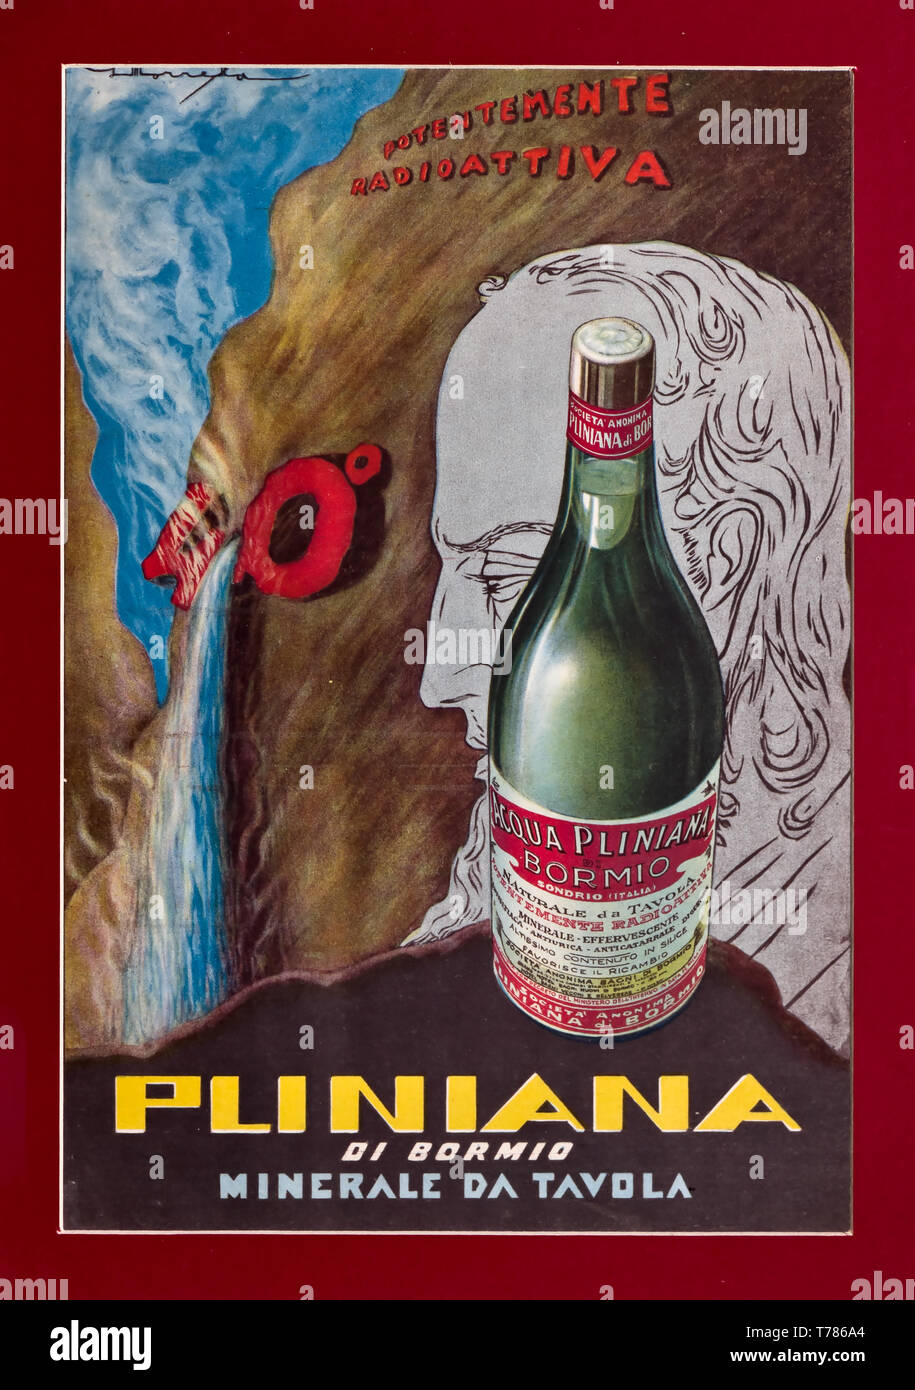 Manifesto pubblicitario d'epoca dell'Acqua Pliniana.  [ENG]  Advertising vintage poster of Pliniana water. Stock Photo